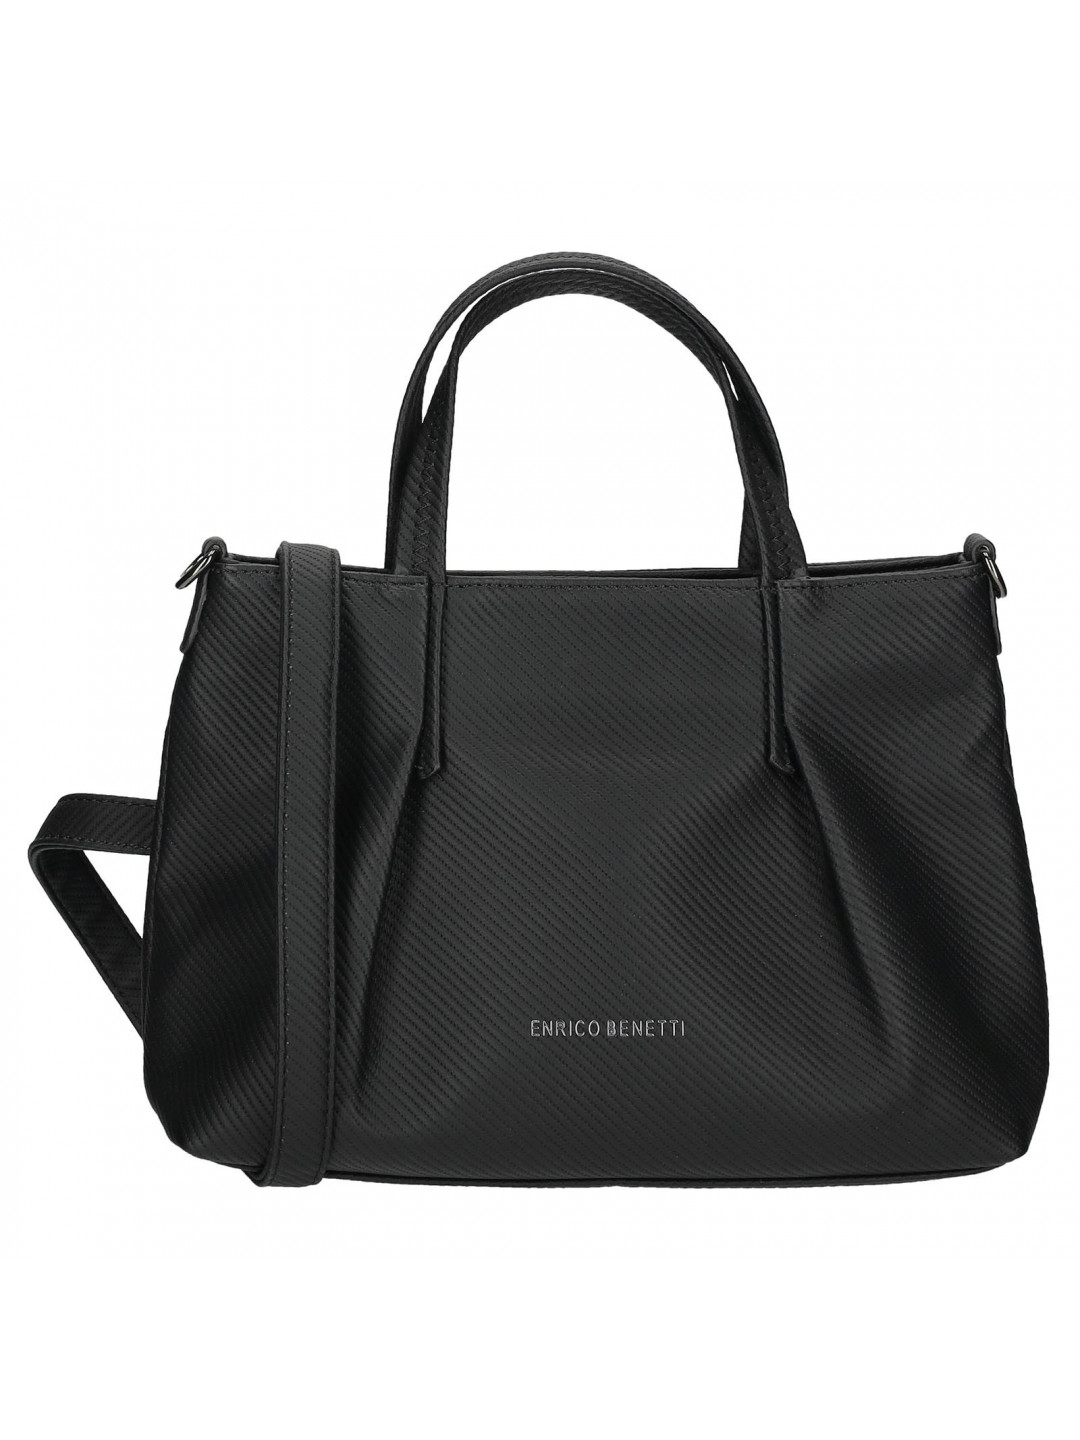 Menší dámská kabelka Enrico Benetti Dorés – černá